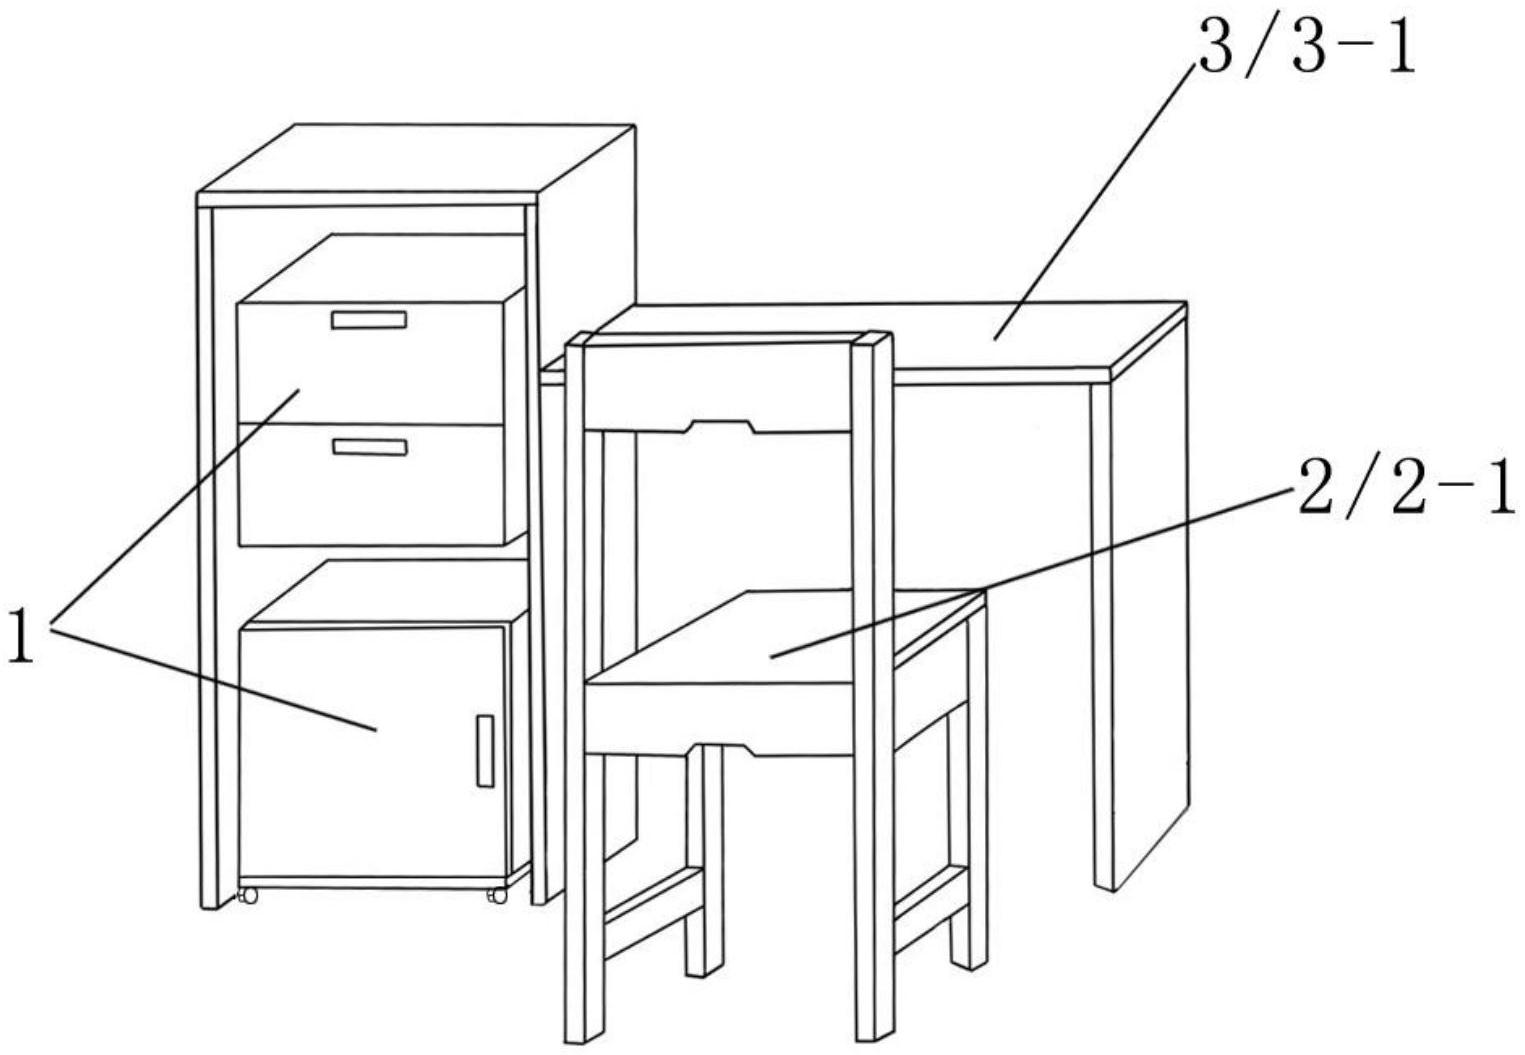 由收纳柜,座椅和书桌三个部分组成,所述书桌由两块方板构成桌面和桌腿